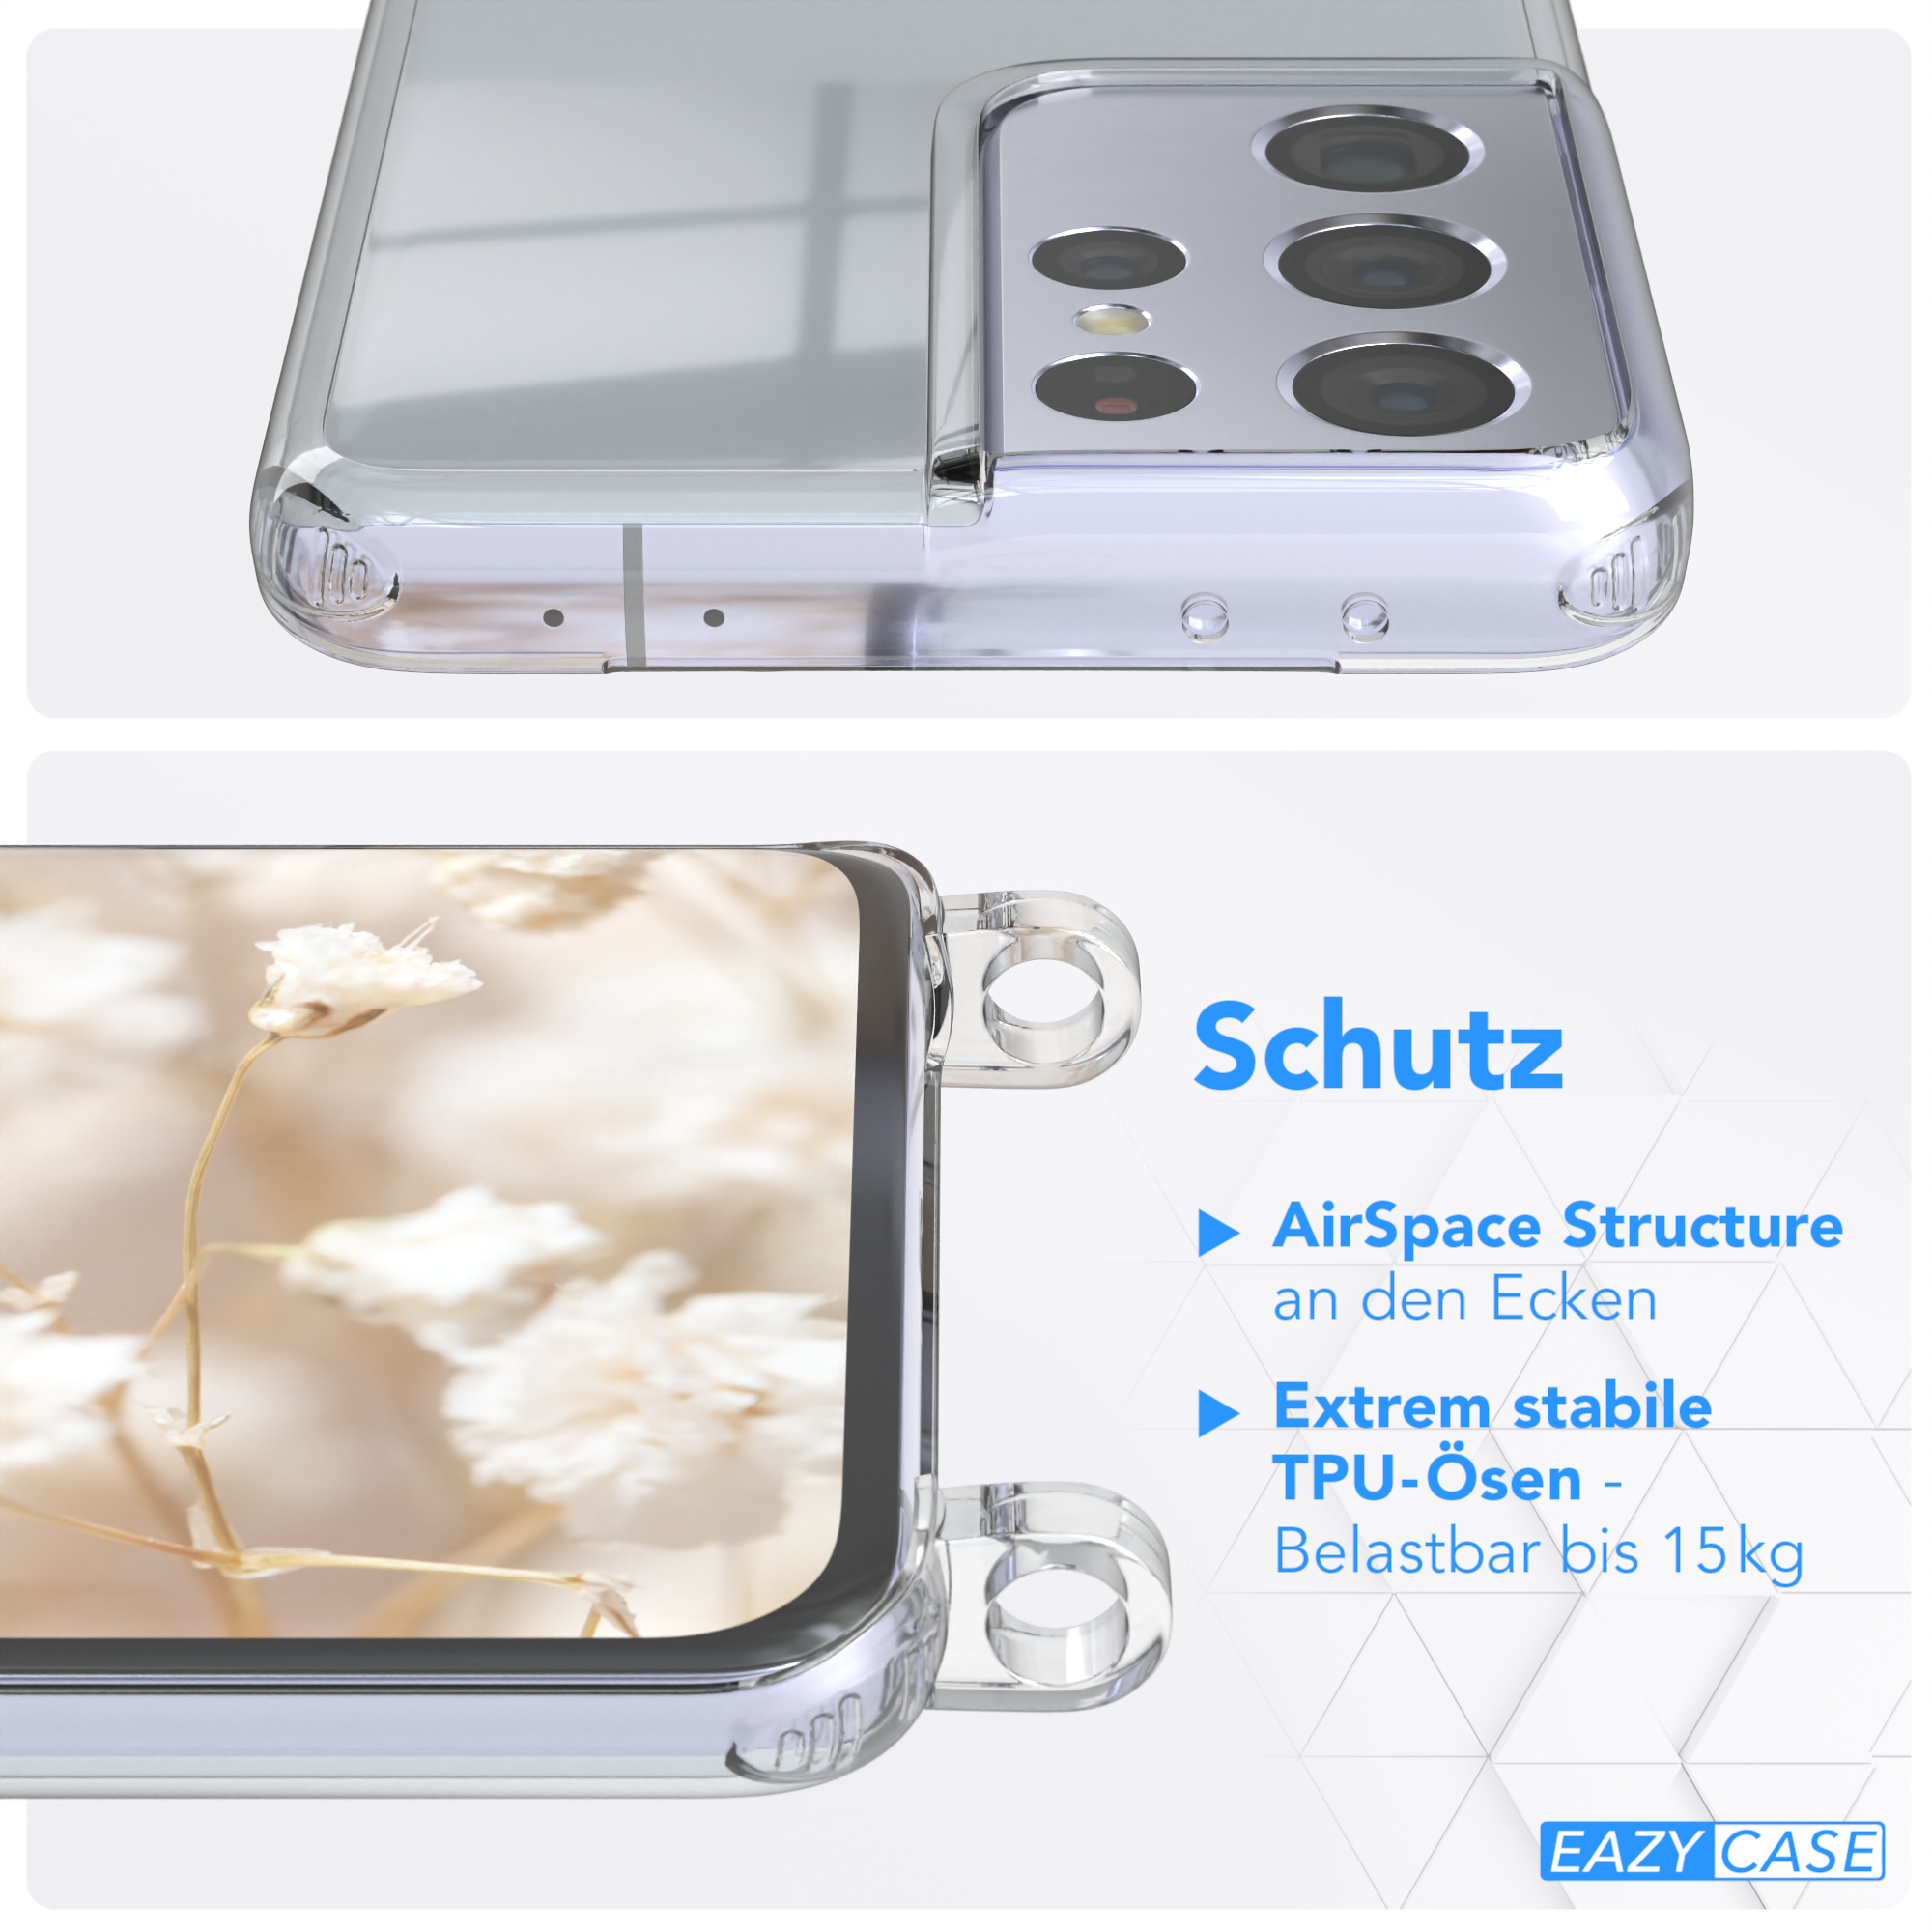 Kordel Braun S21 mit 5G, Galaxy Boho Handyhülle CASE Umhängetasche, Samsung, Ultra Transparente Mix EAZY Style,